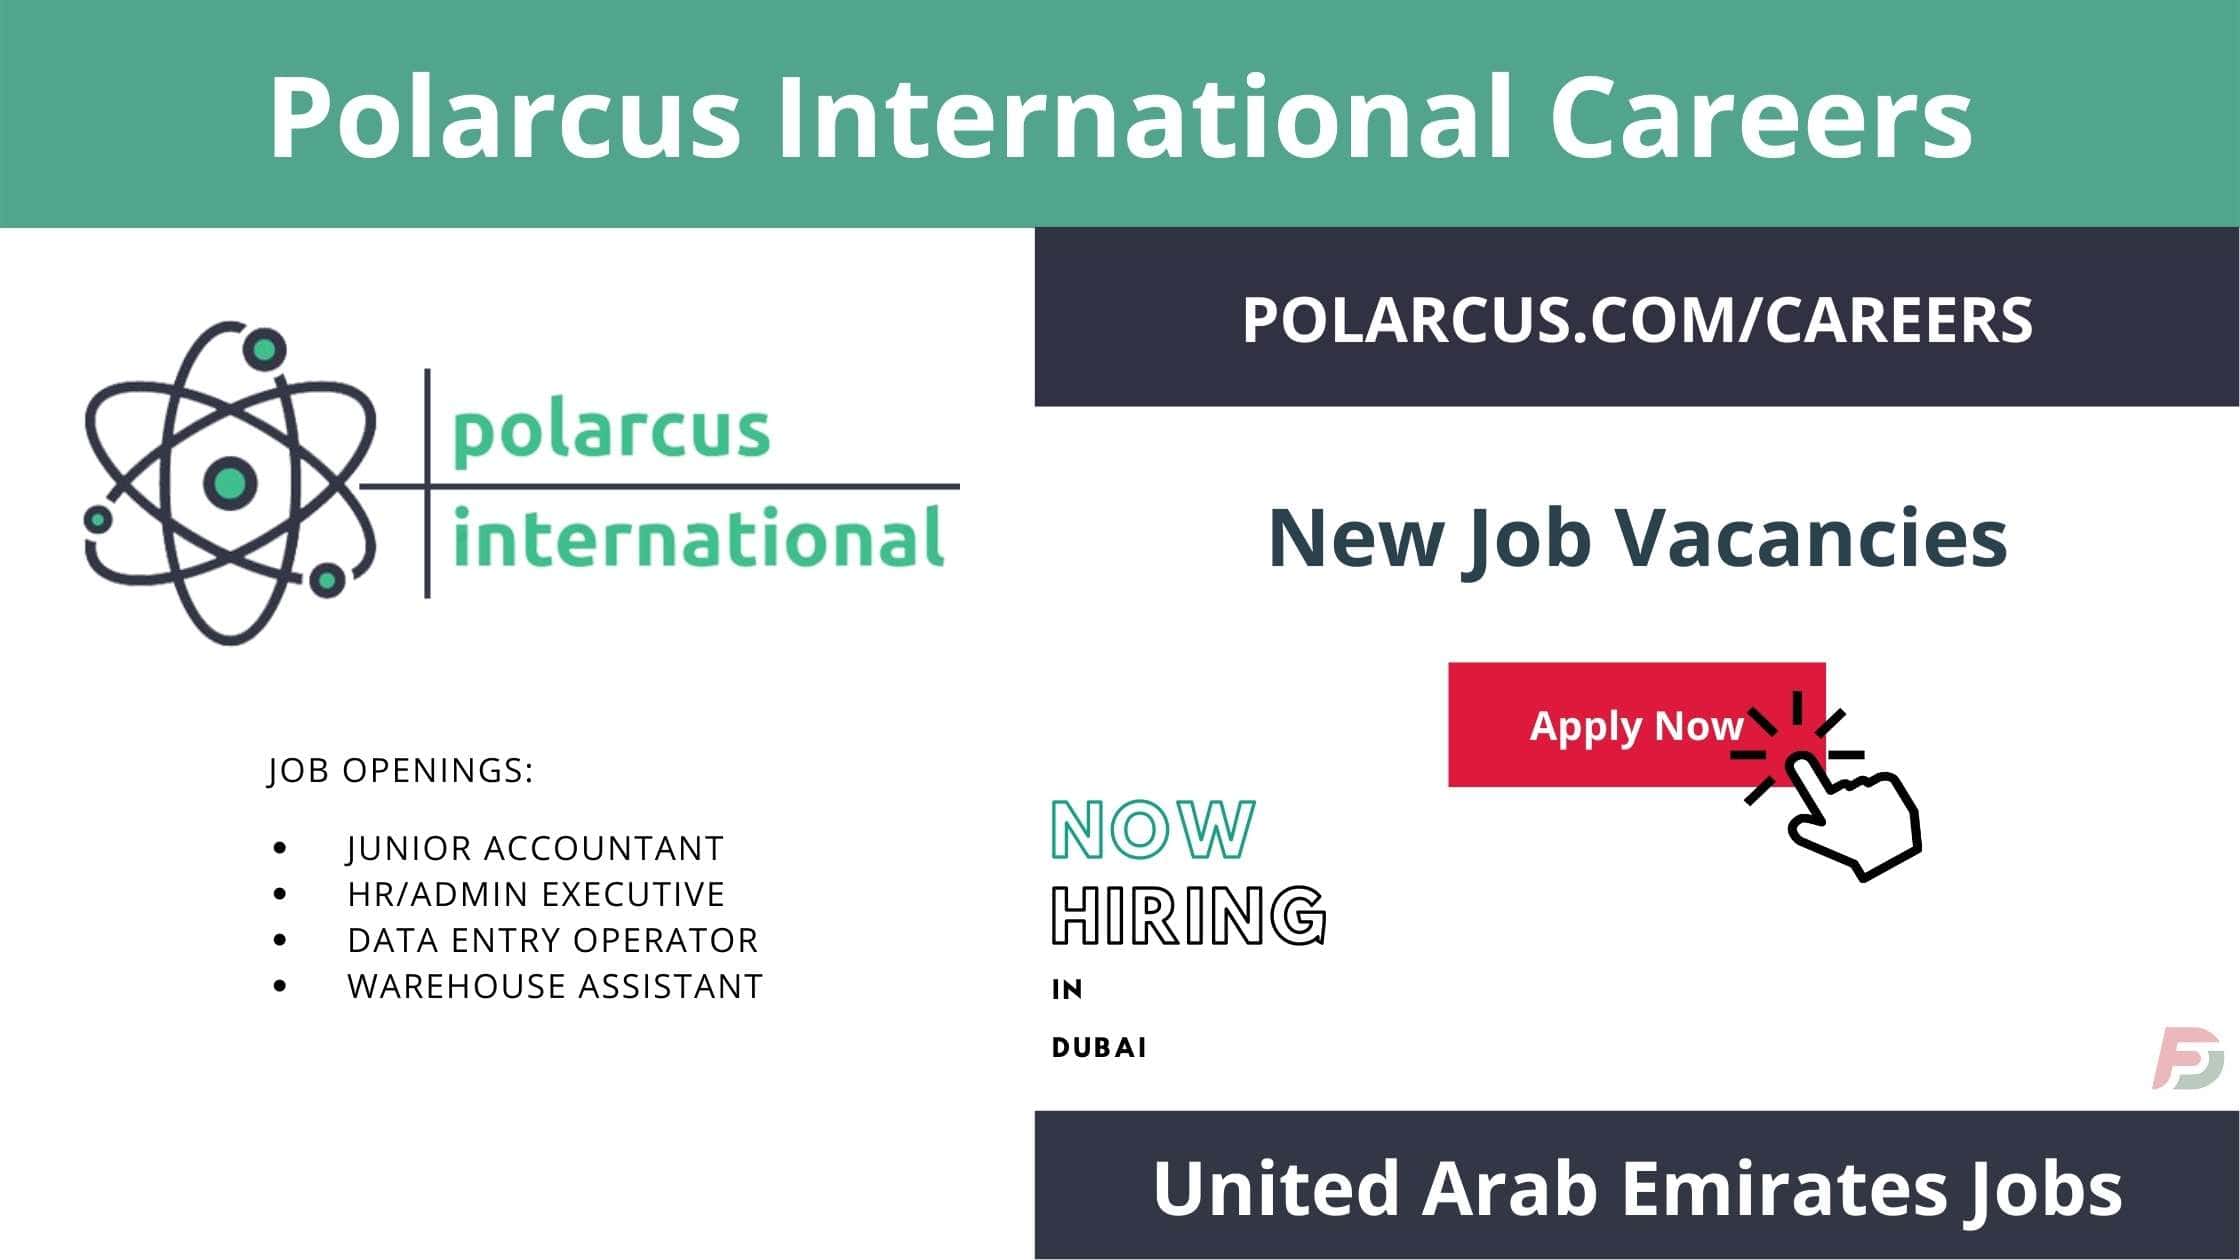 Polarcus International Careers in Dubai